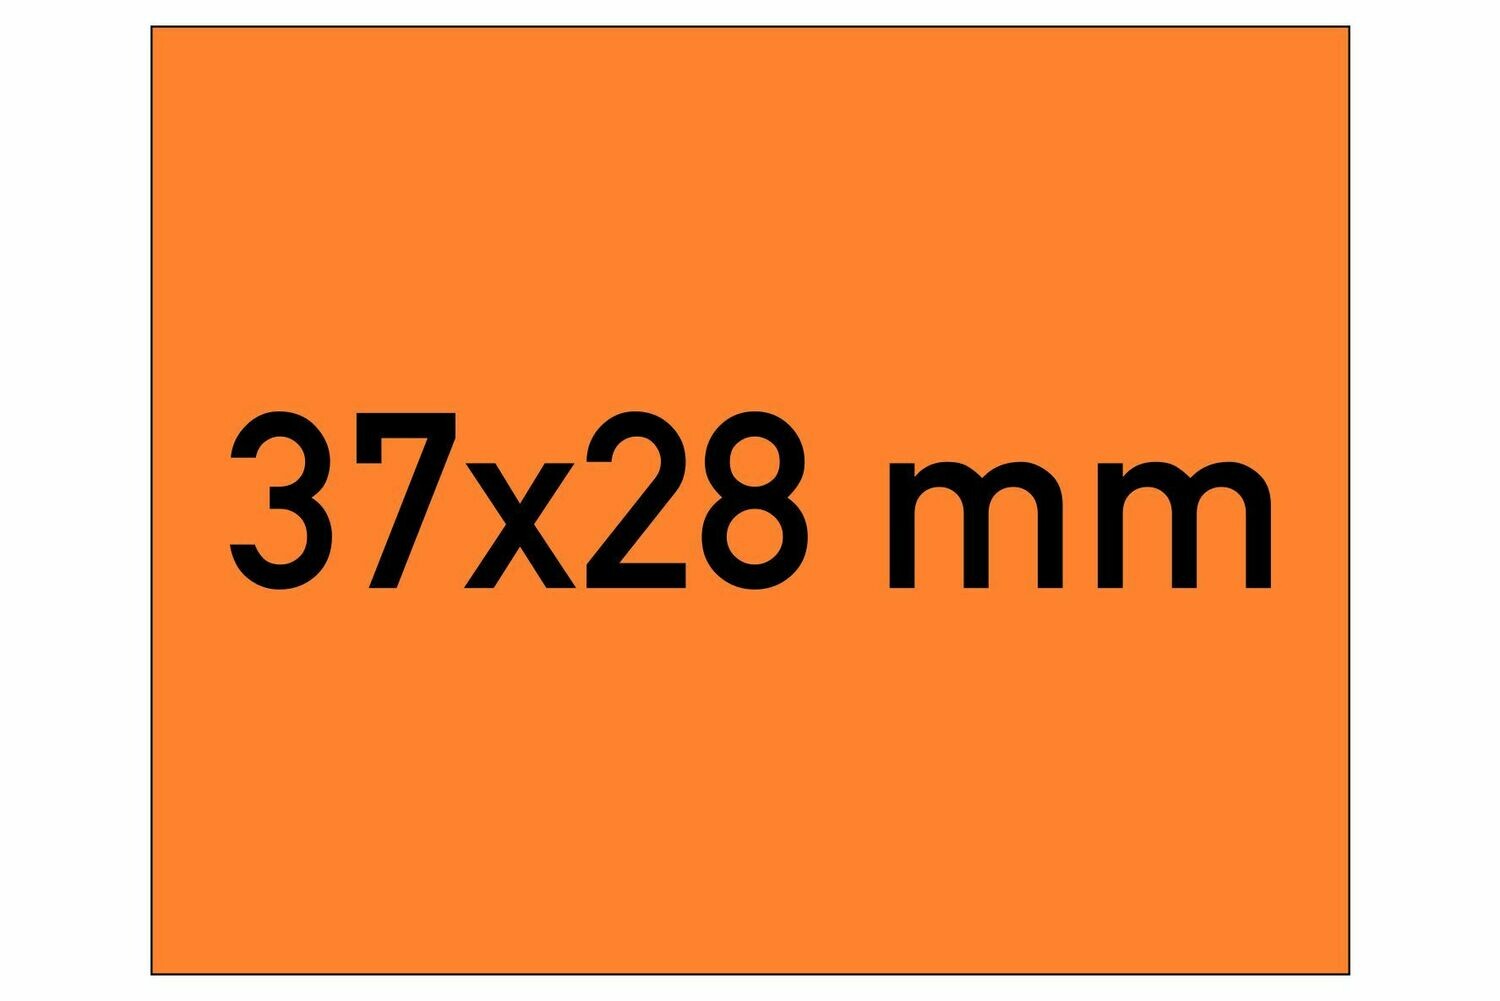 Etiketten 37x28 mm orange